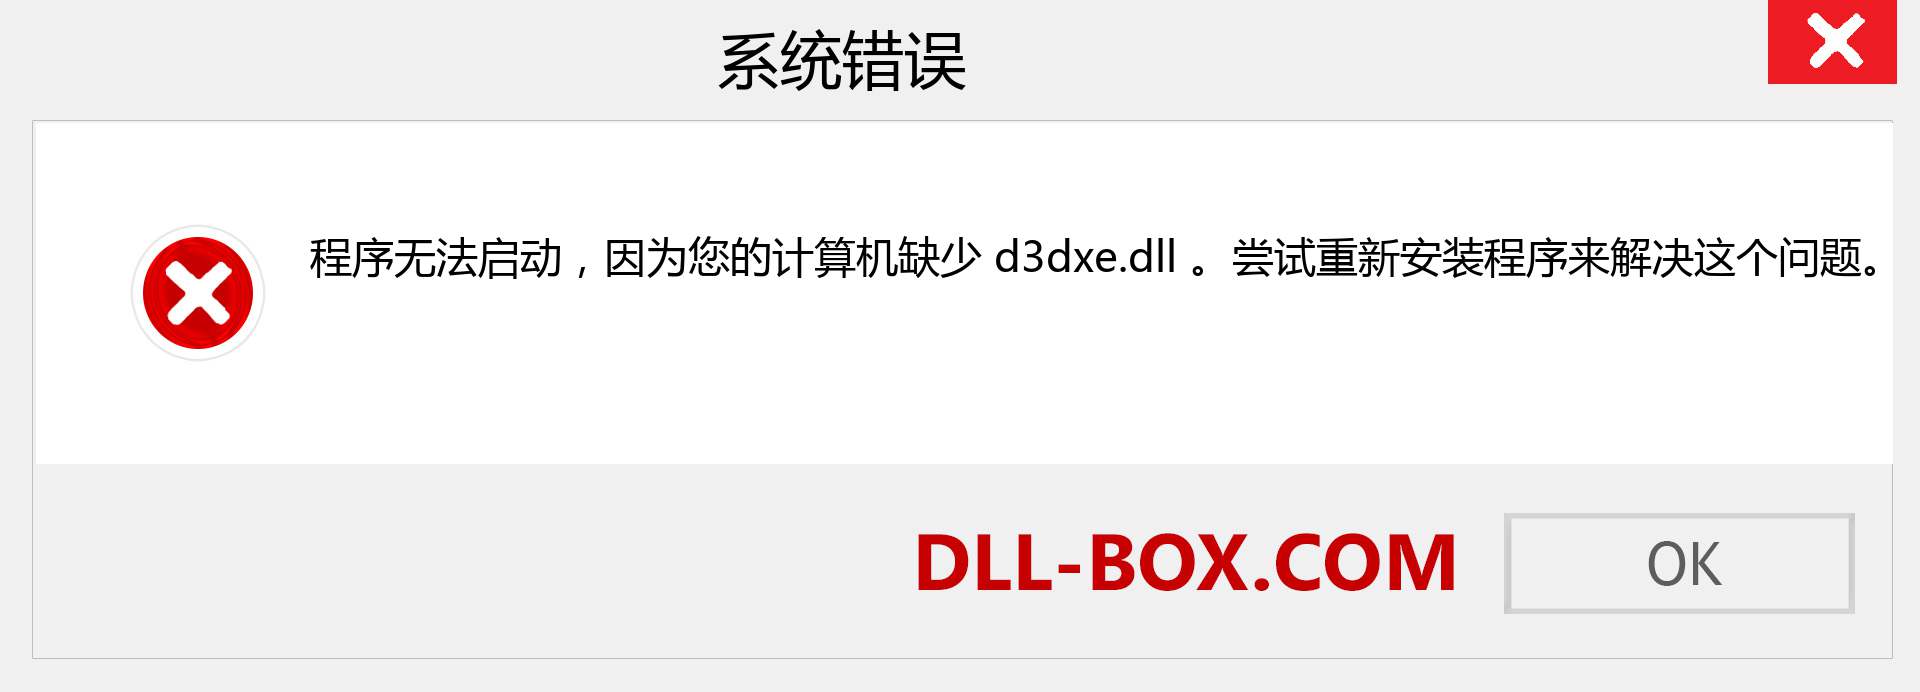 d3dxe.dll 文件丢失？。 适用于 Windows 7、8、10 的下载 - 修复 Windows、照片、图像上的 d3dxe dll 丢失错误